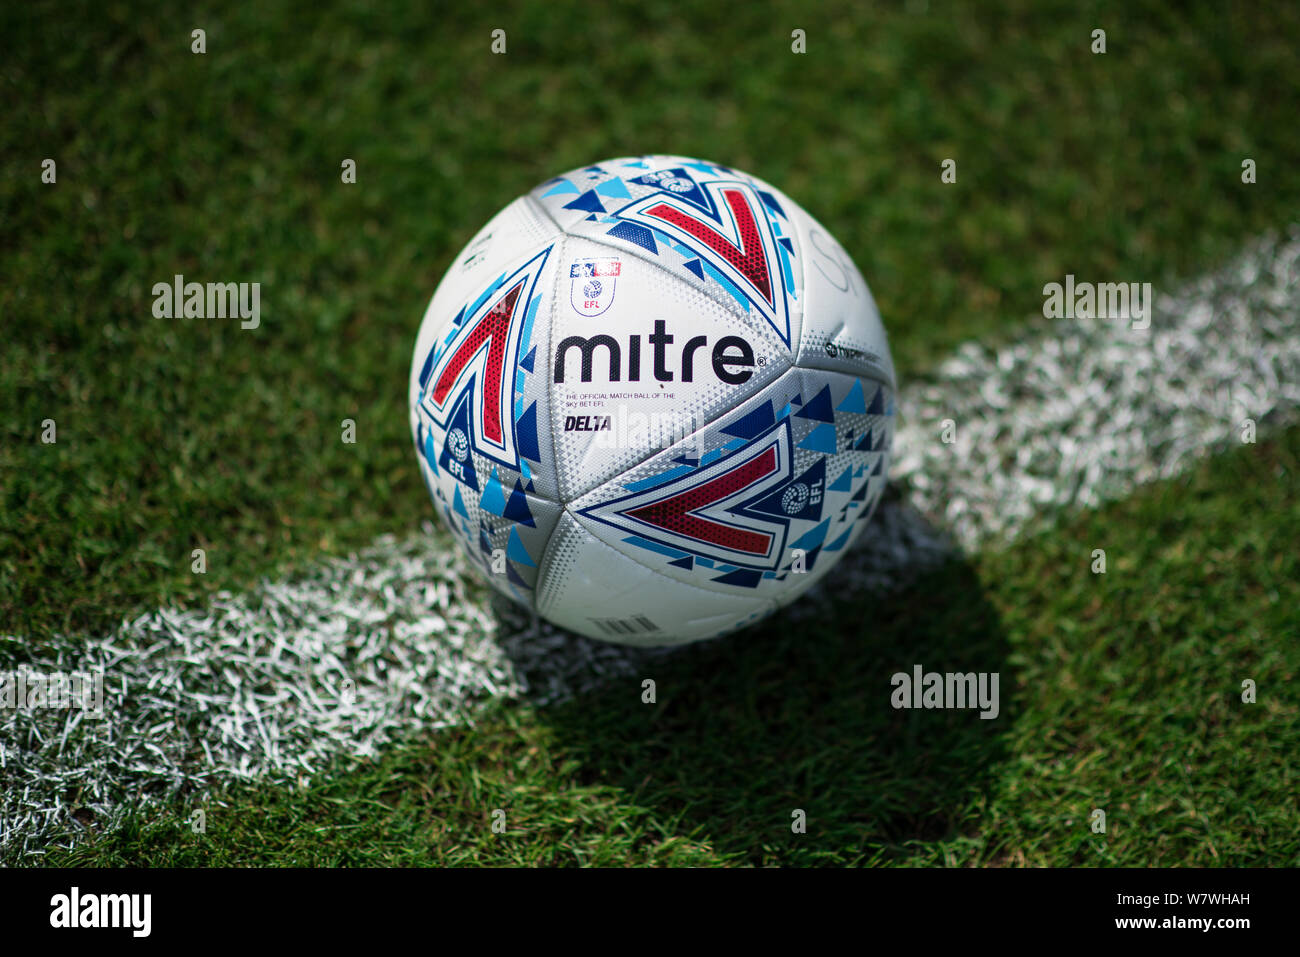 Delta mitre. Ballon de match officiel de l'EFL 2019-2020. Banque D'Images